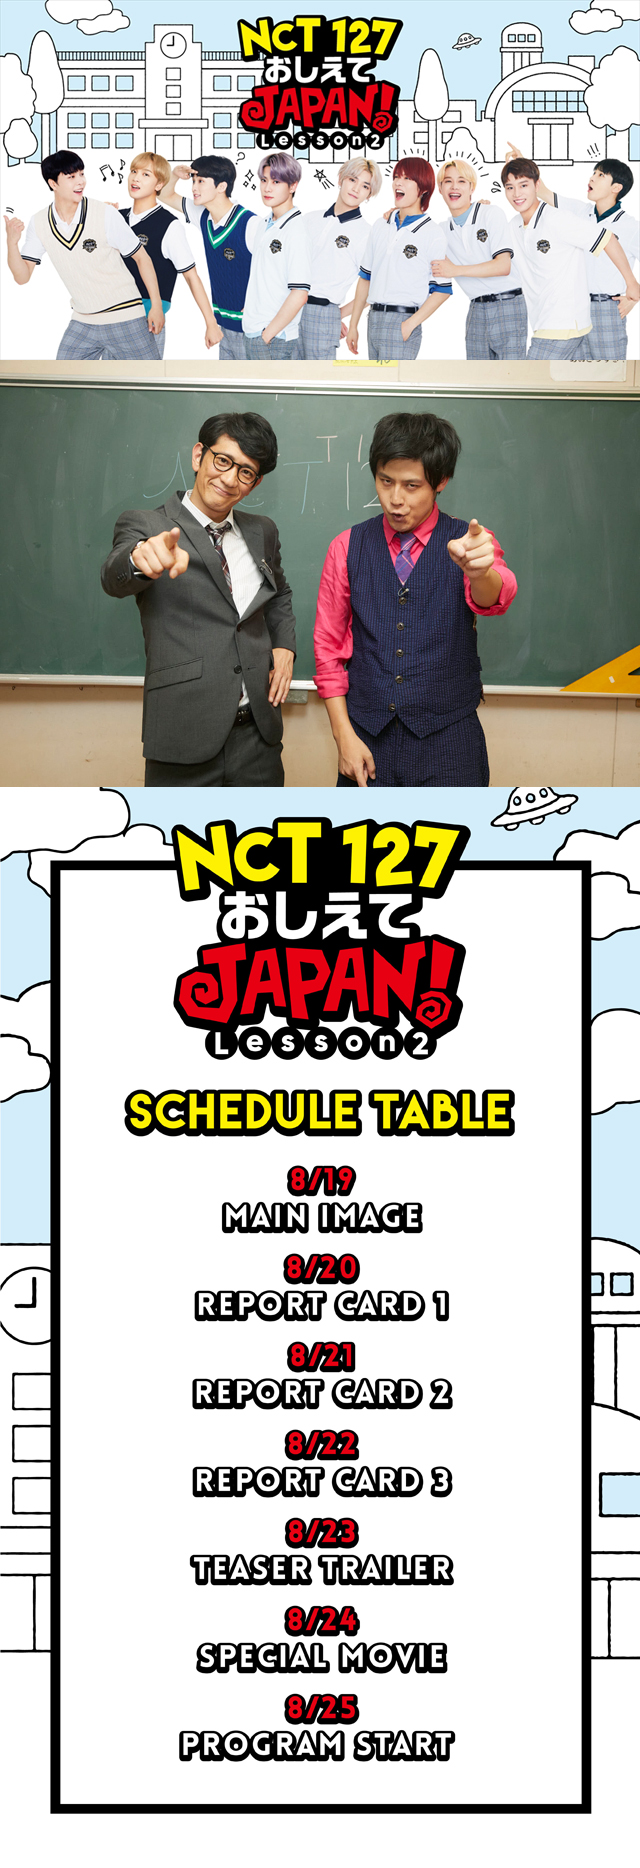 『NCT 127 おしえてJAPAN! Lesson2』のメインビジュアル公開！